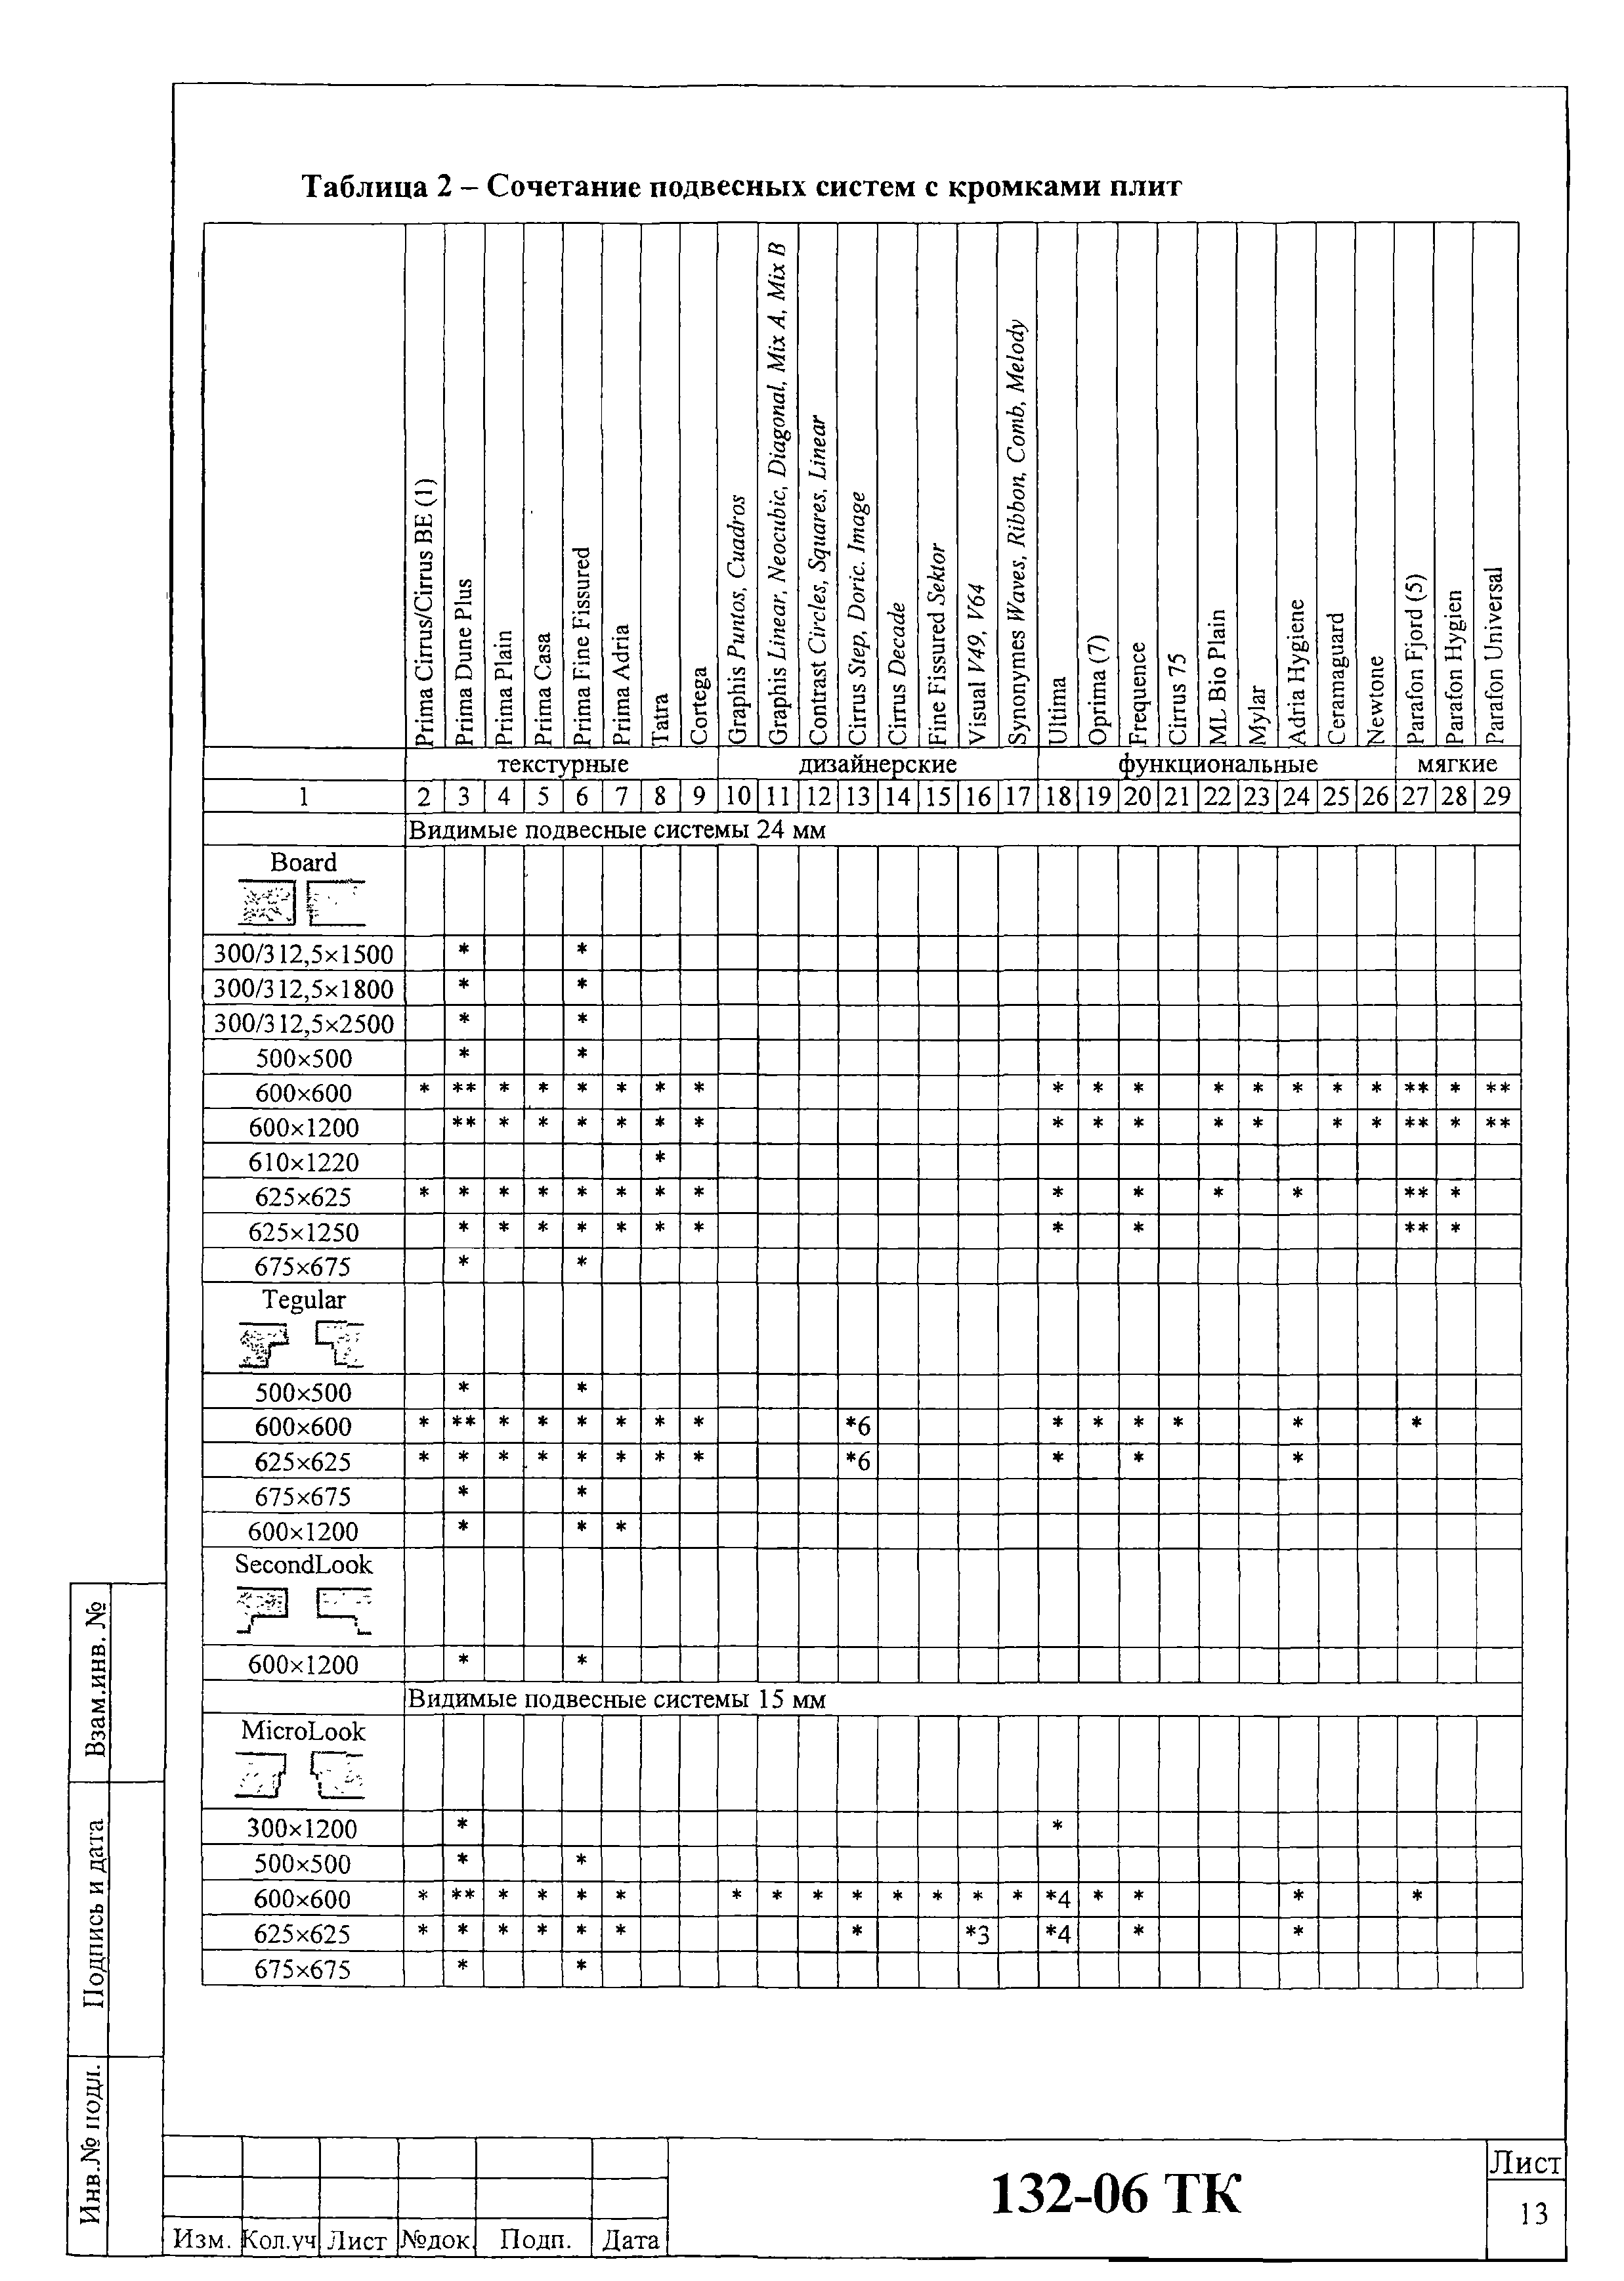 Технологическая карта 132-06 ТК